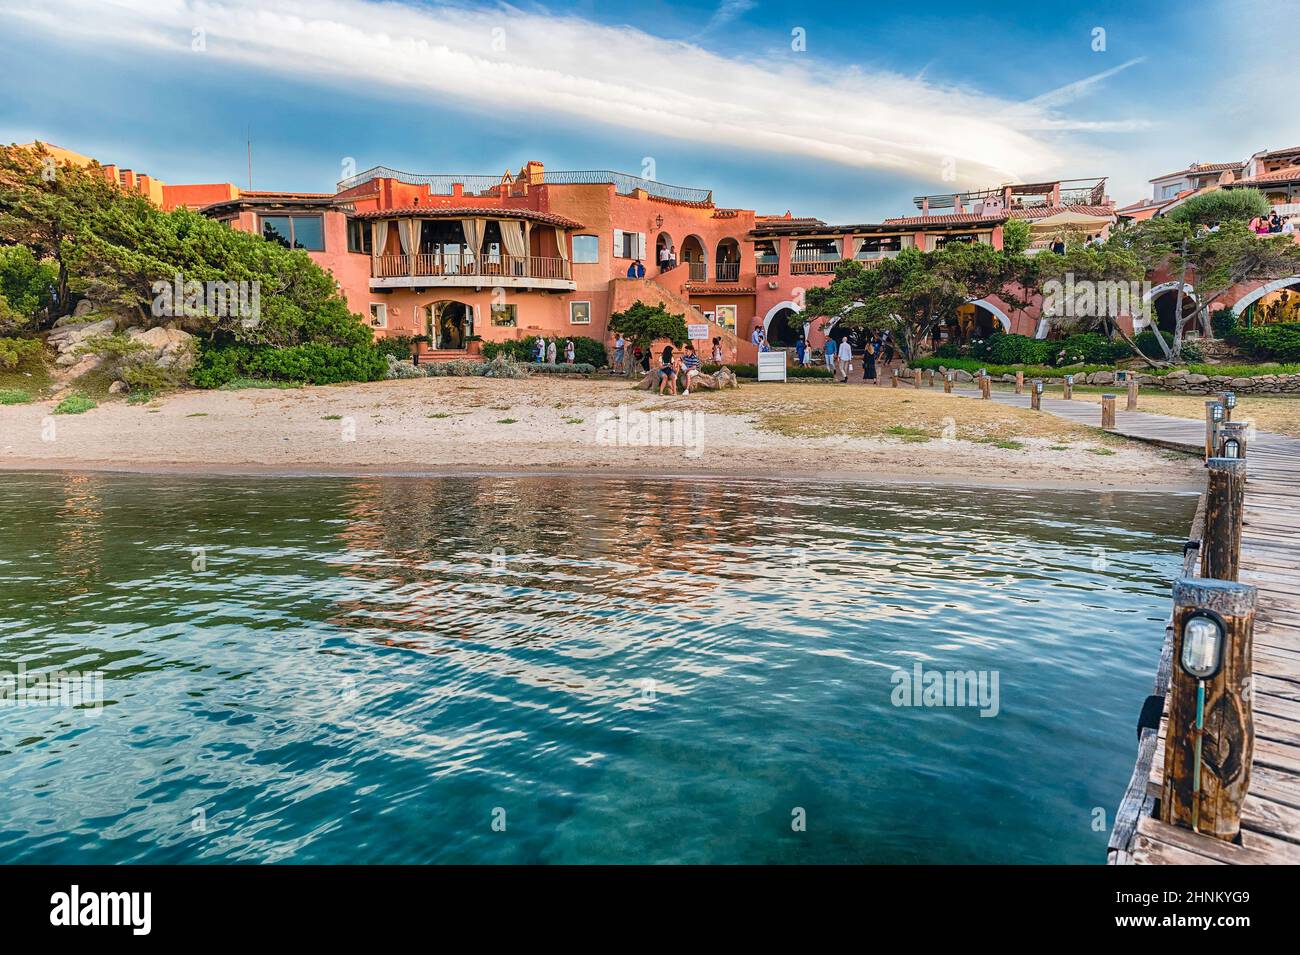 Harbor of Porto Cervo, heart of Costa Smeralda, Sardinia, Italy Stock Photo